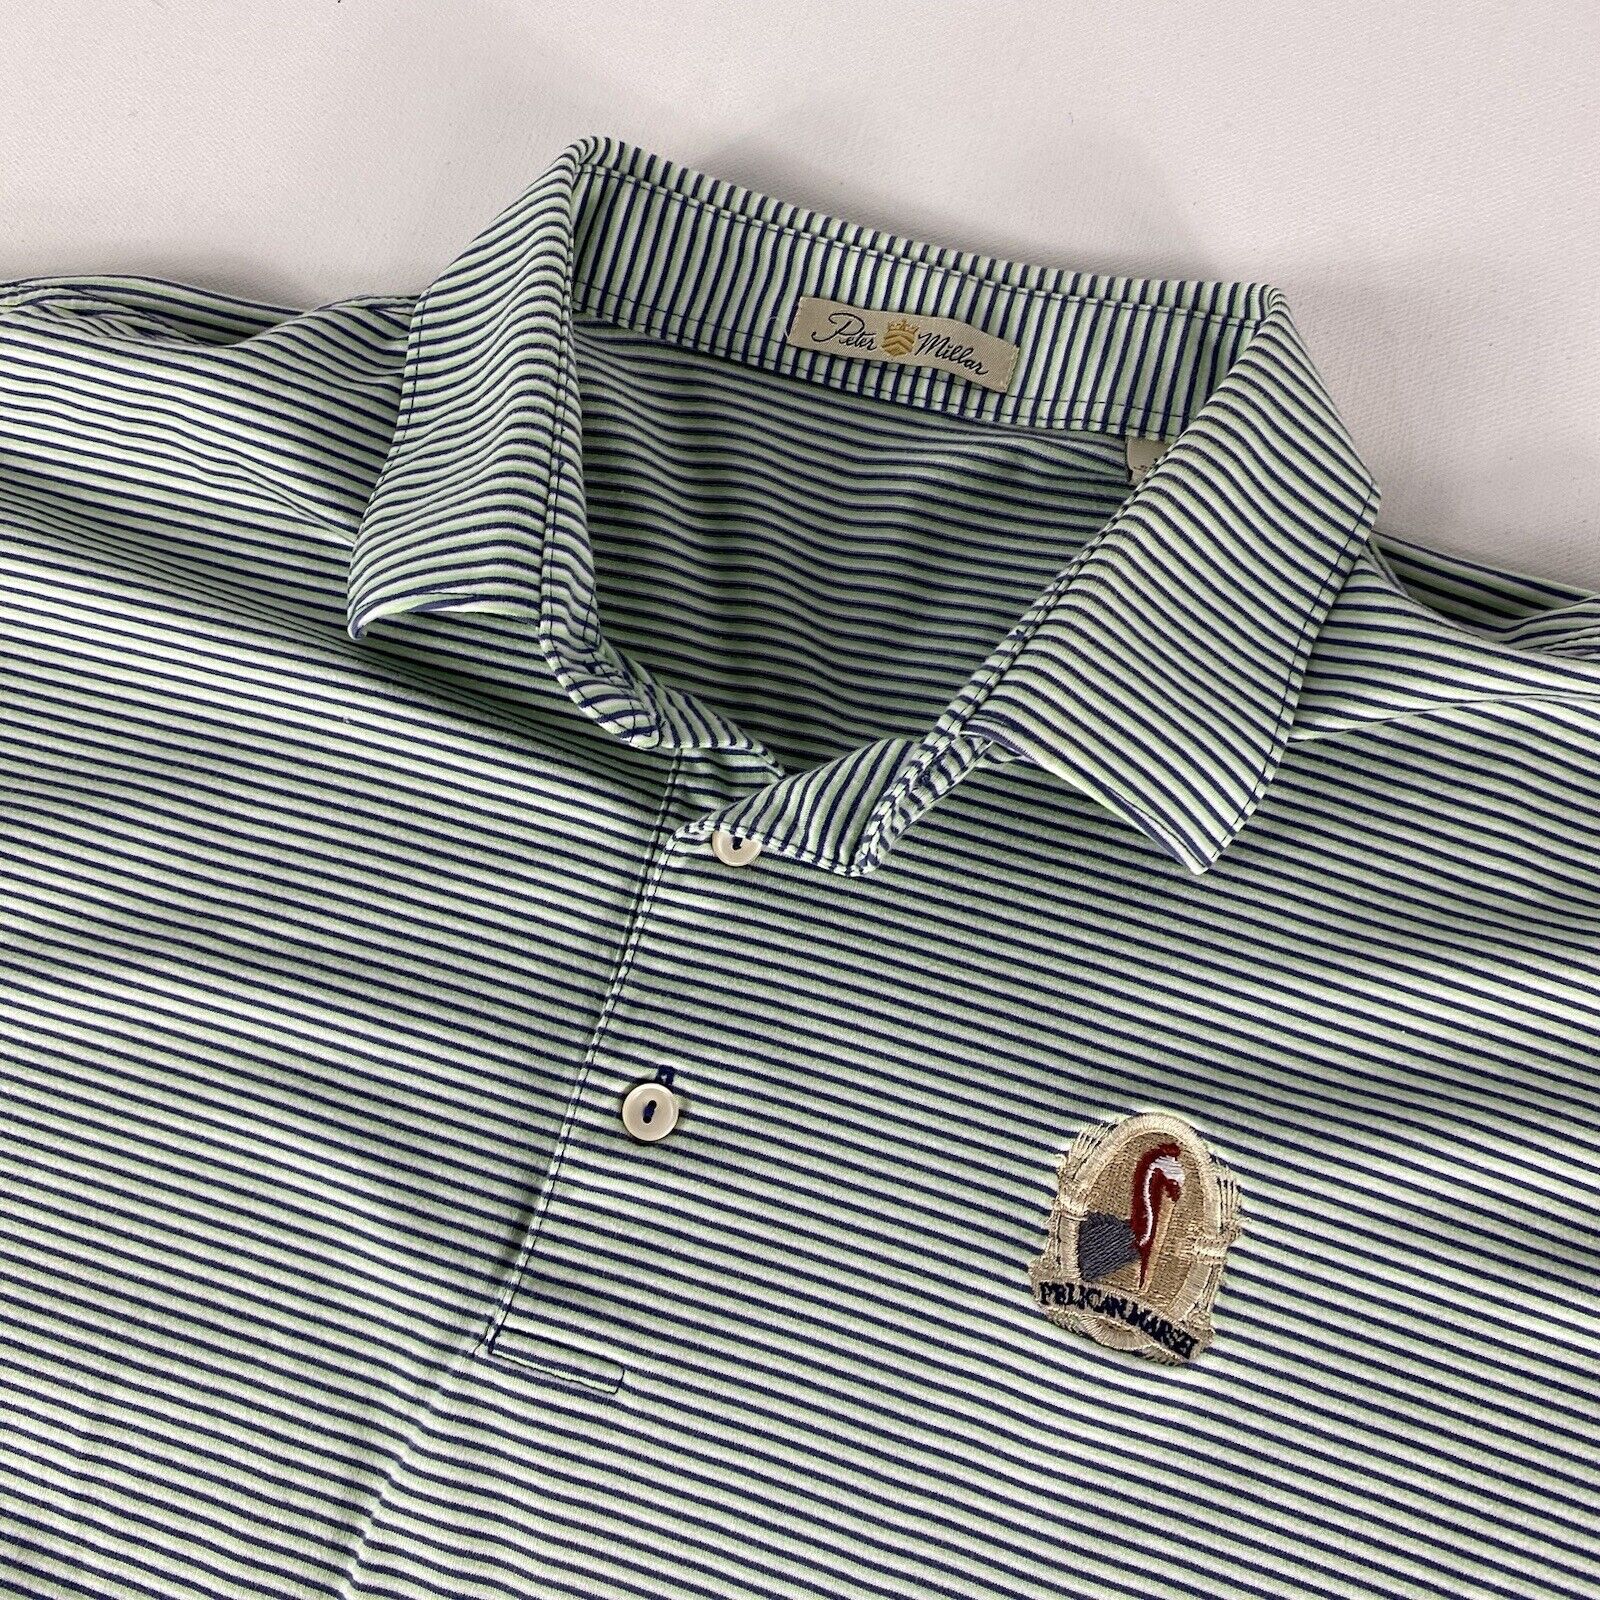 Peter Millar Polo Shirt Men’s XL Green Blue Striped Cotton Pelican Marsh Golf